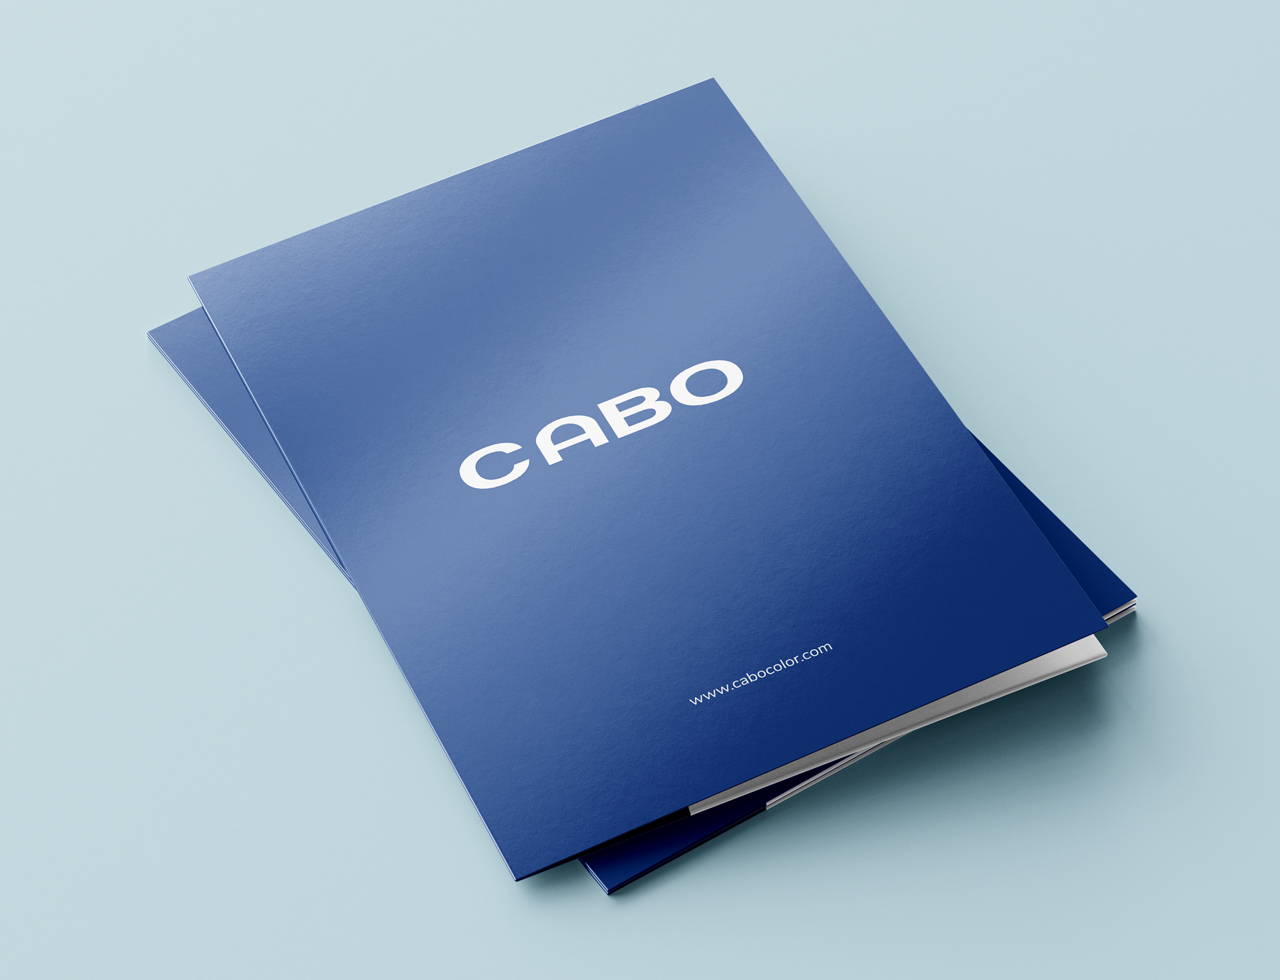 CABO - cabocolor.com